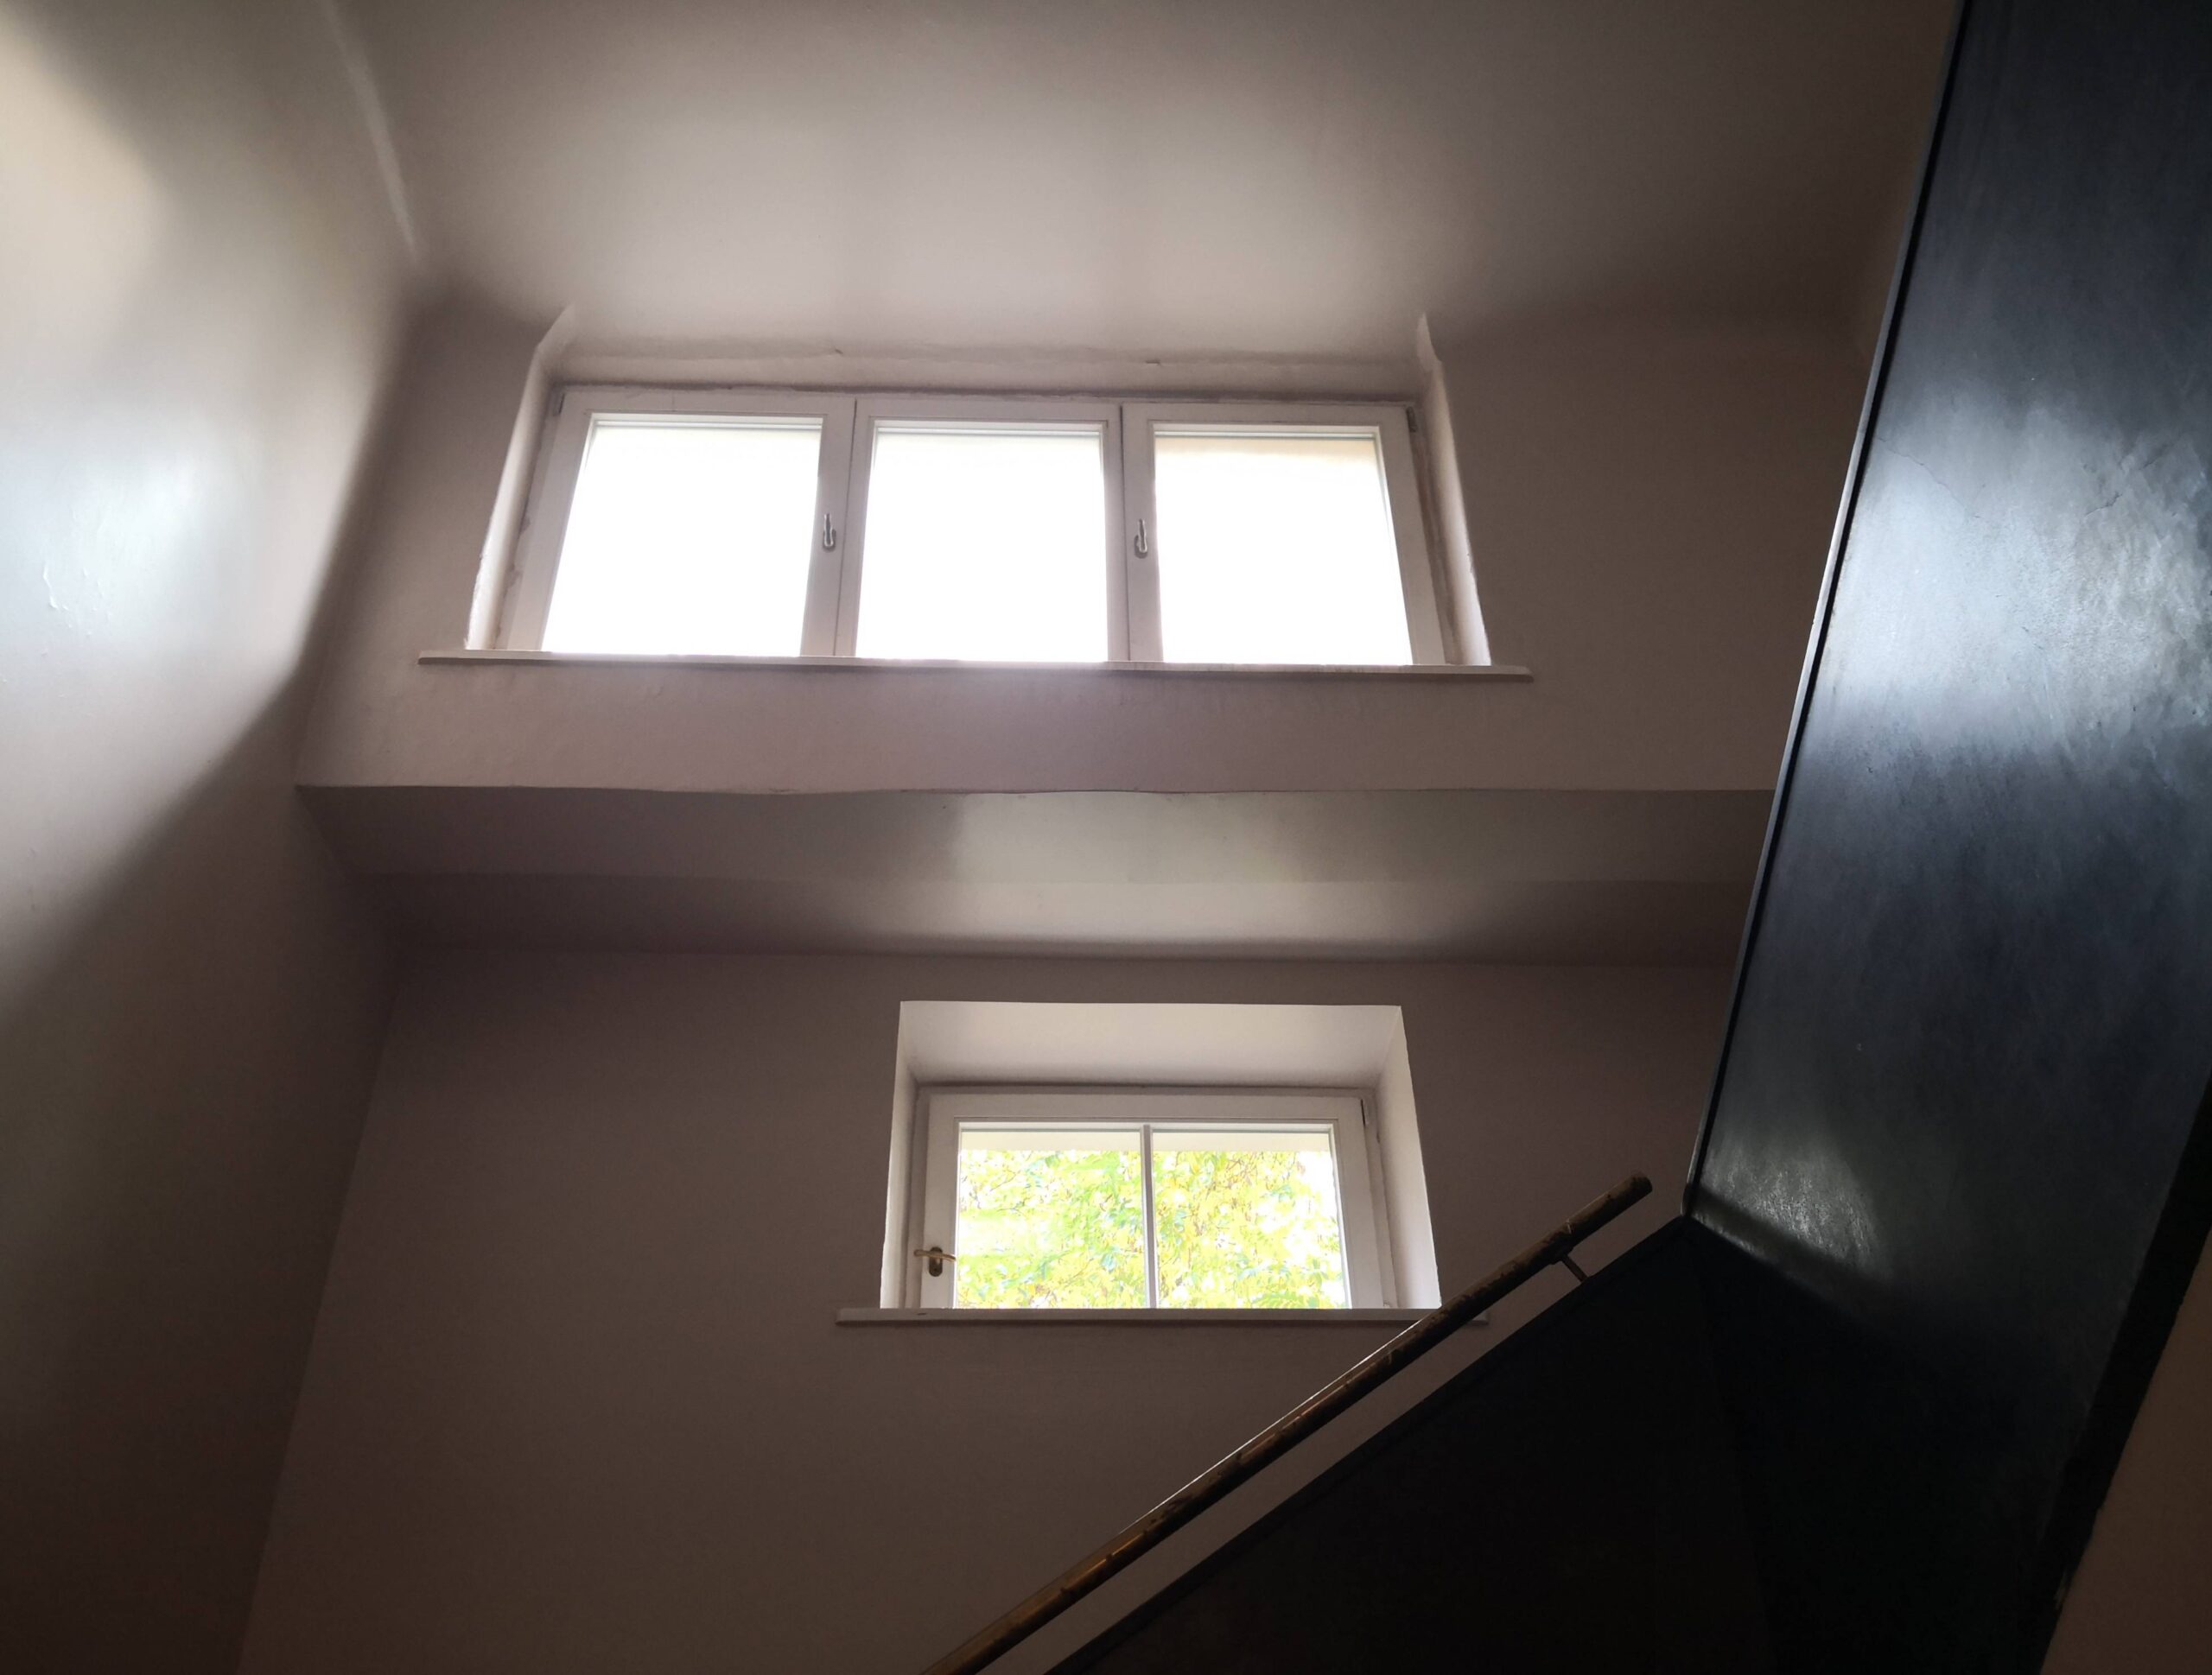 Okno trójskrzydłowe doświetlające ostatnie piętro klatki schodowej. Fot. Małgorzata Maksymiuk 2022 r., źródło: AOD III.